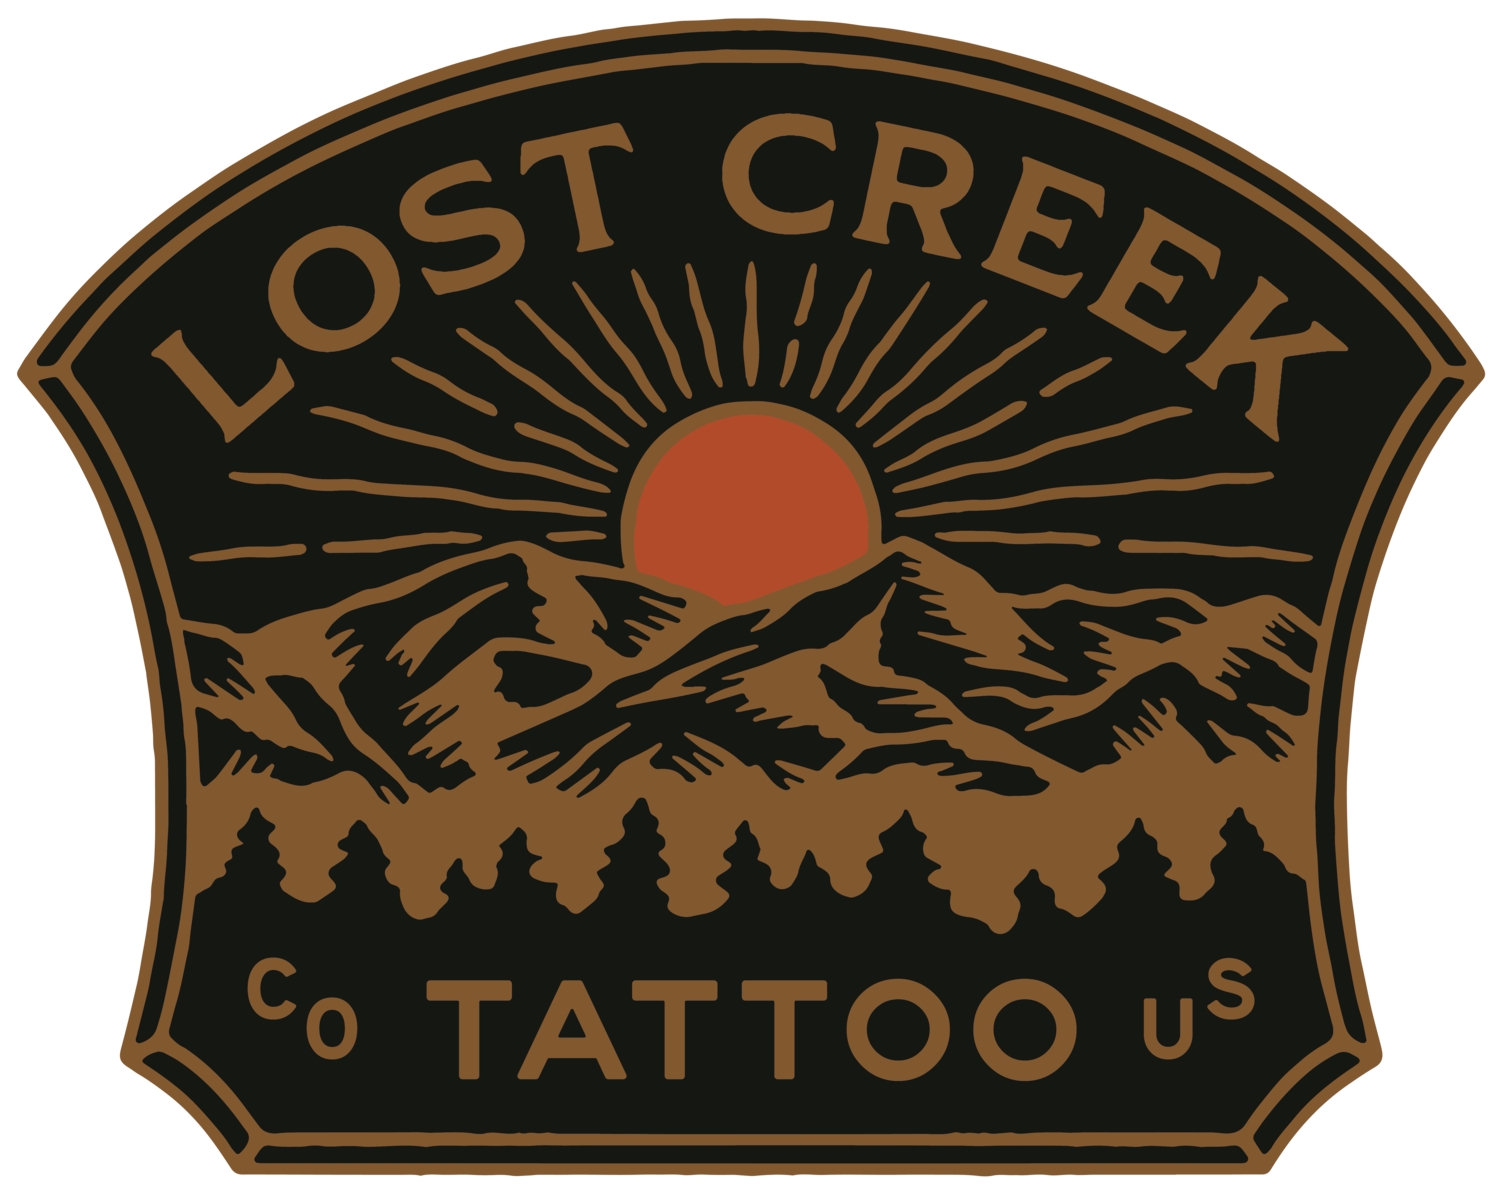 Lost Creek Tattoo